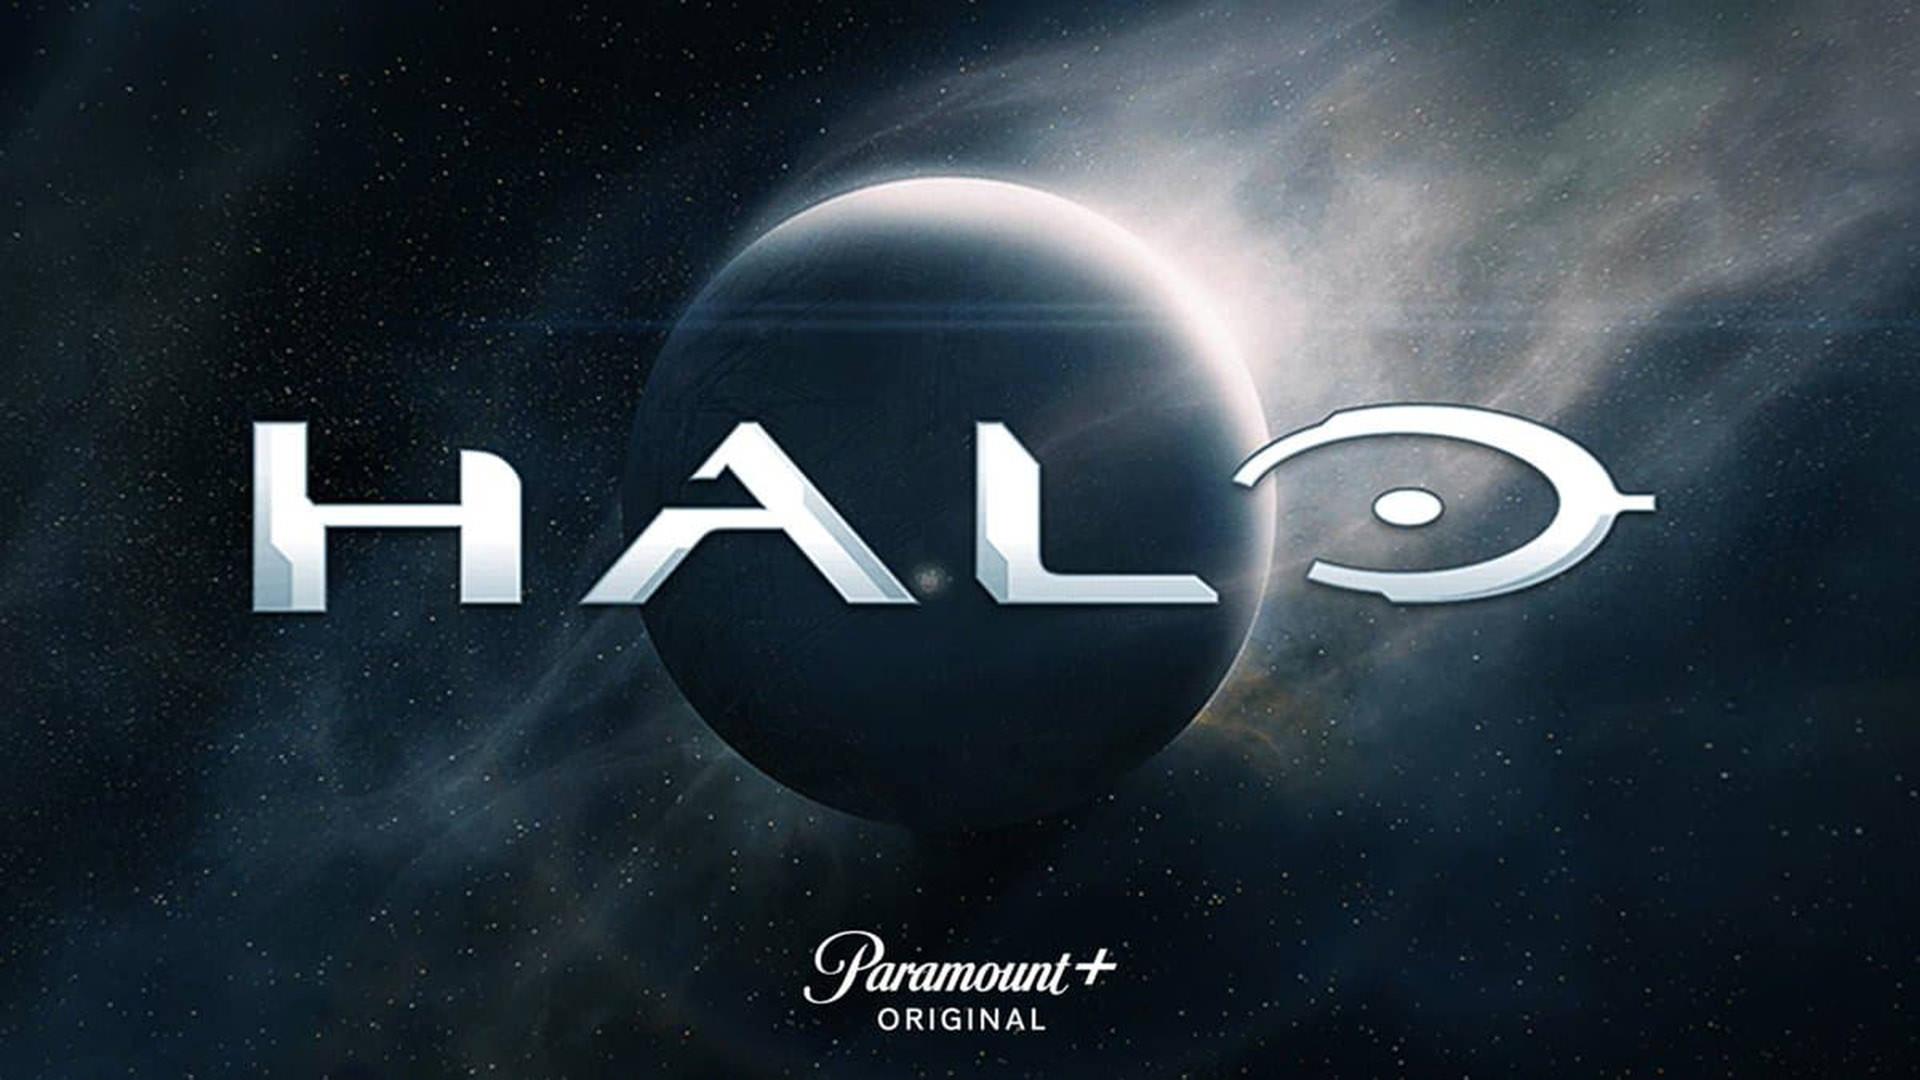 نمایش مستر چیف در اولین تیزر تریلر سریال Halo